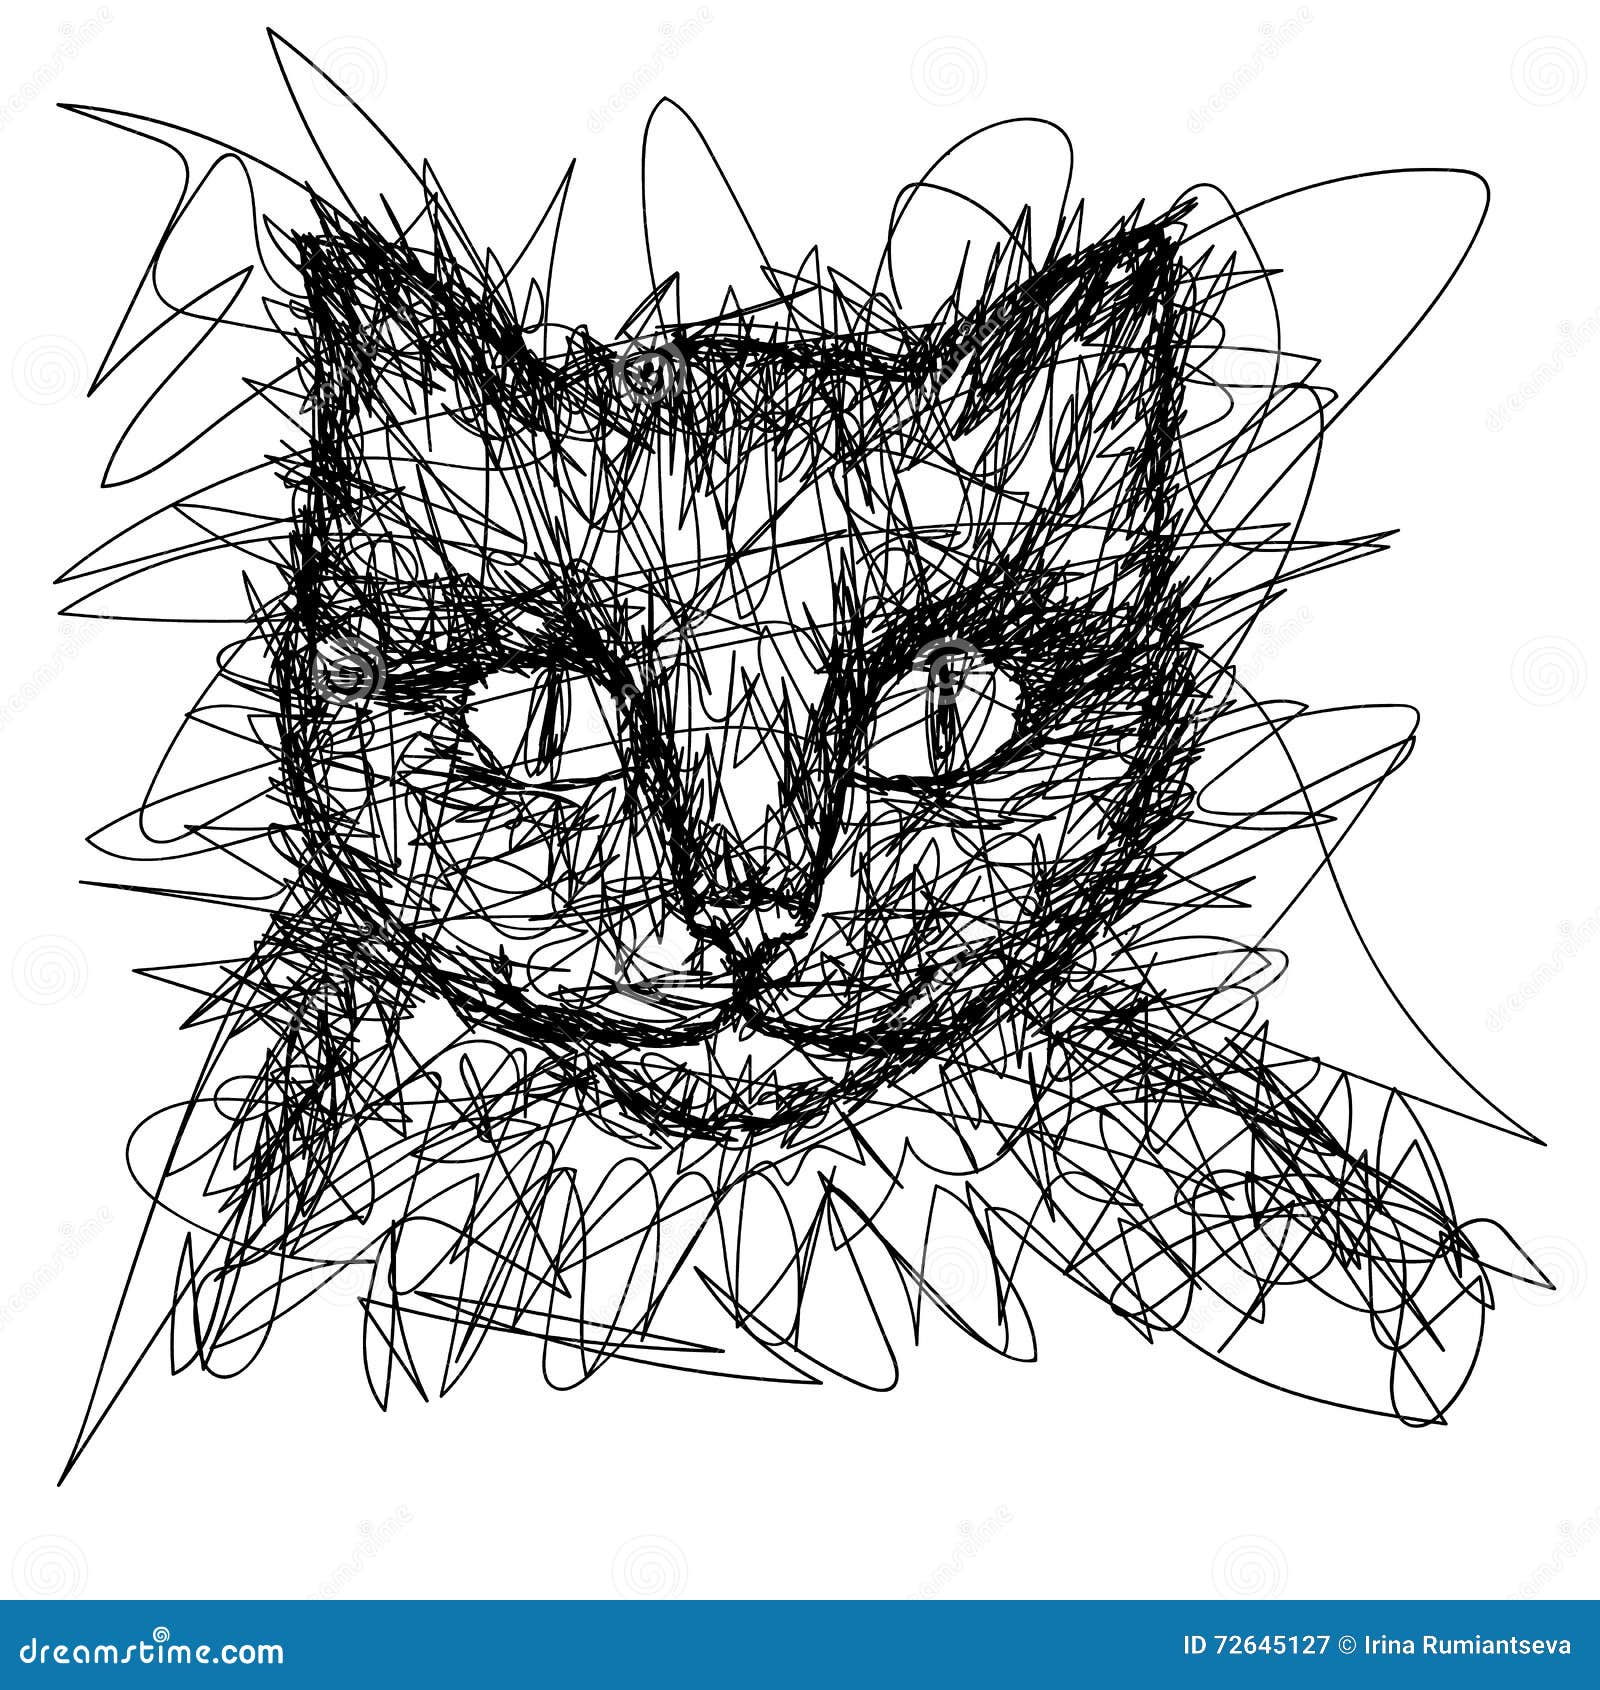 Minimalist Line Art Cat Drawing | Art Board Print